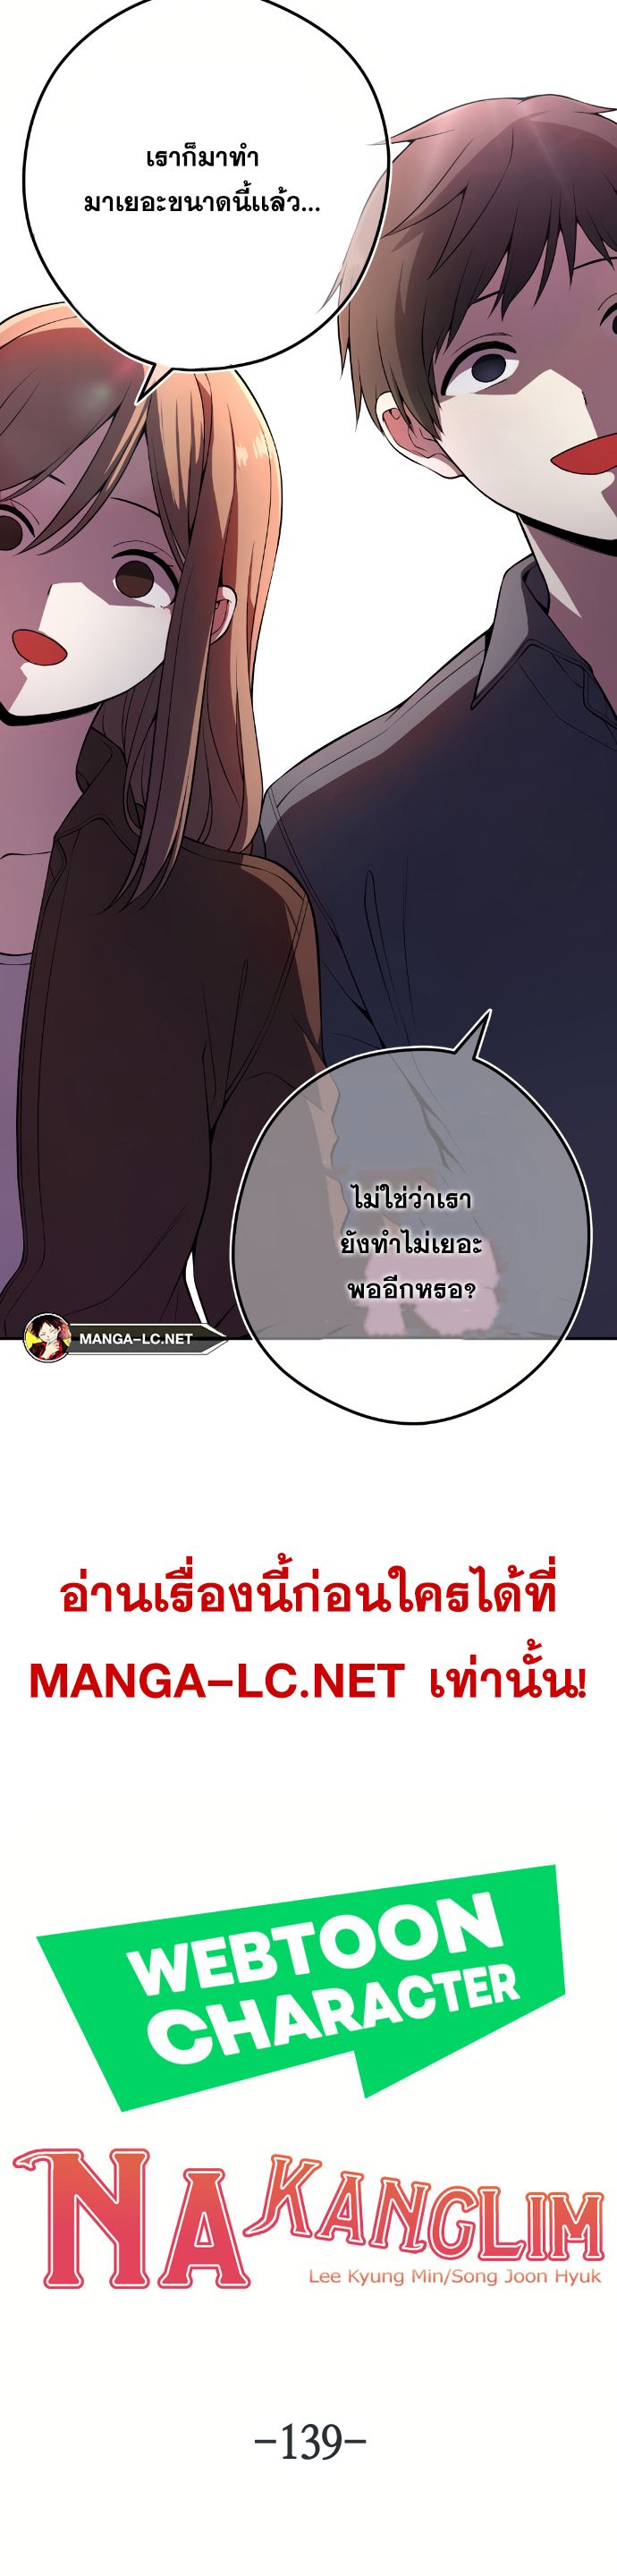 Webtoon Character Na Kang Lim ตอนที่ 139 (13)